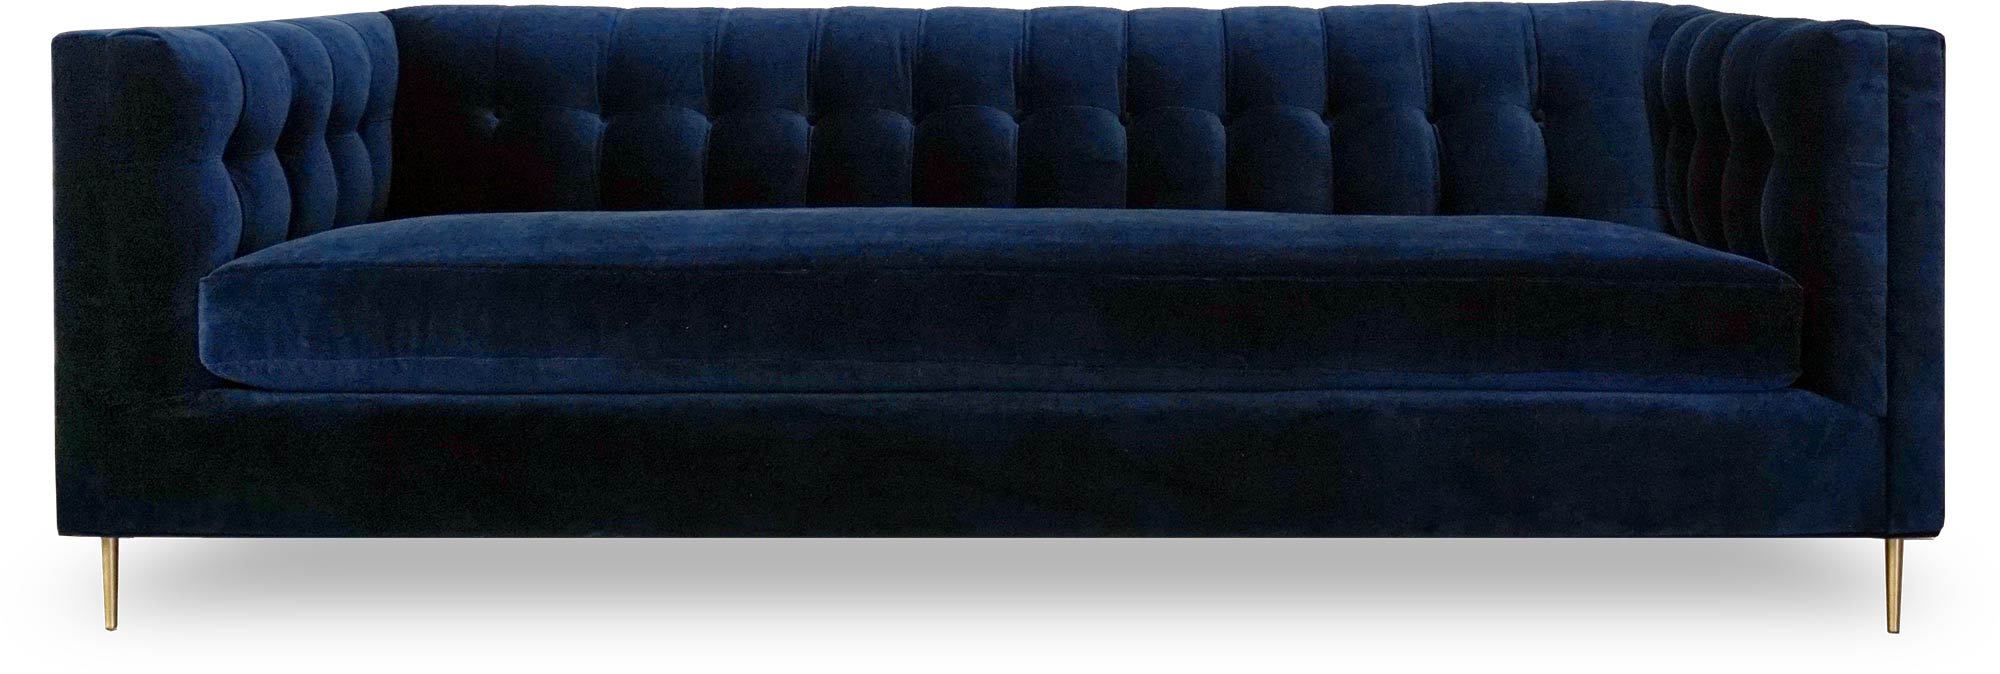 Atticus sofa in Como Indigo blue velvet with brass legs